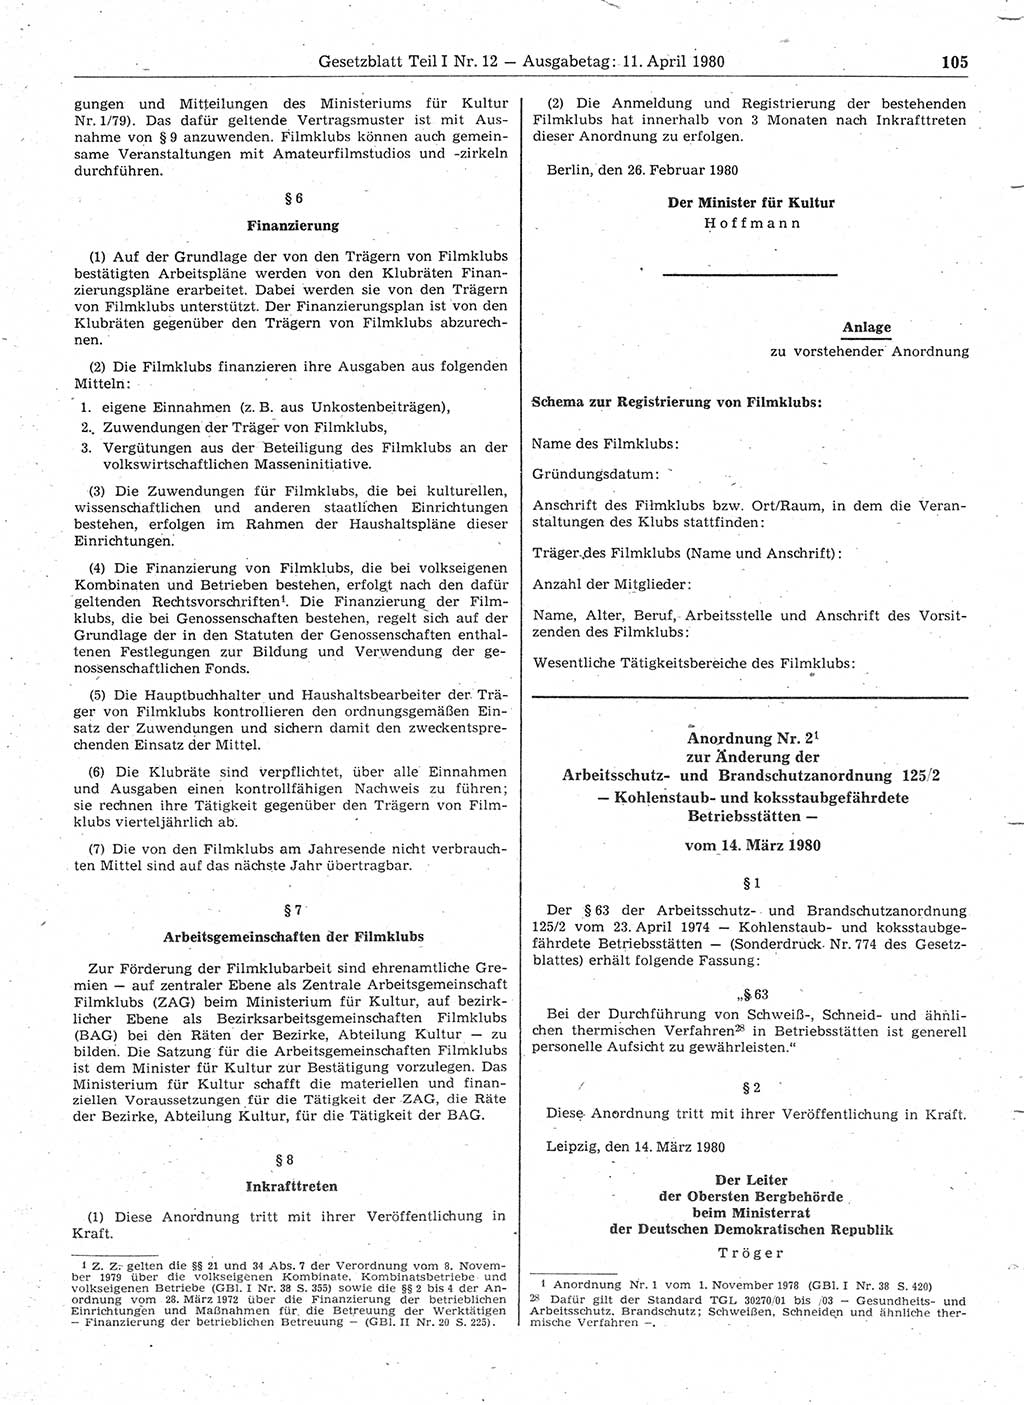 Gesetzblatt (GBl.) der Deutschen Demokratischen Republik (DDR) Teil Ⅰ 1980, Seite 105 (GBl. DDR Ⅰ 1980, S. 105)